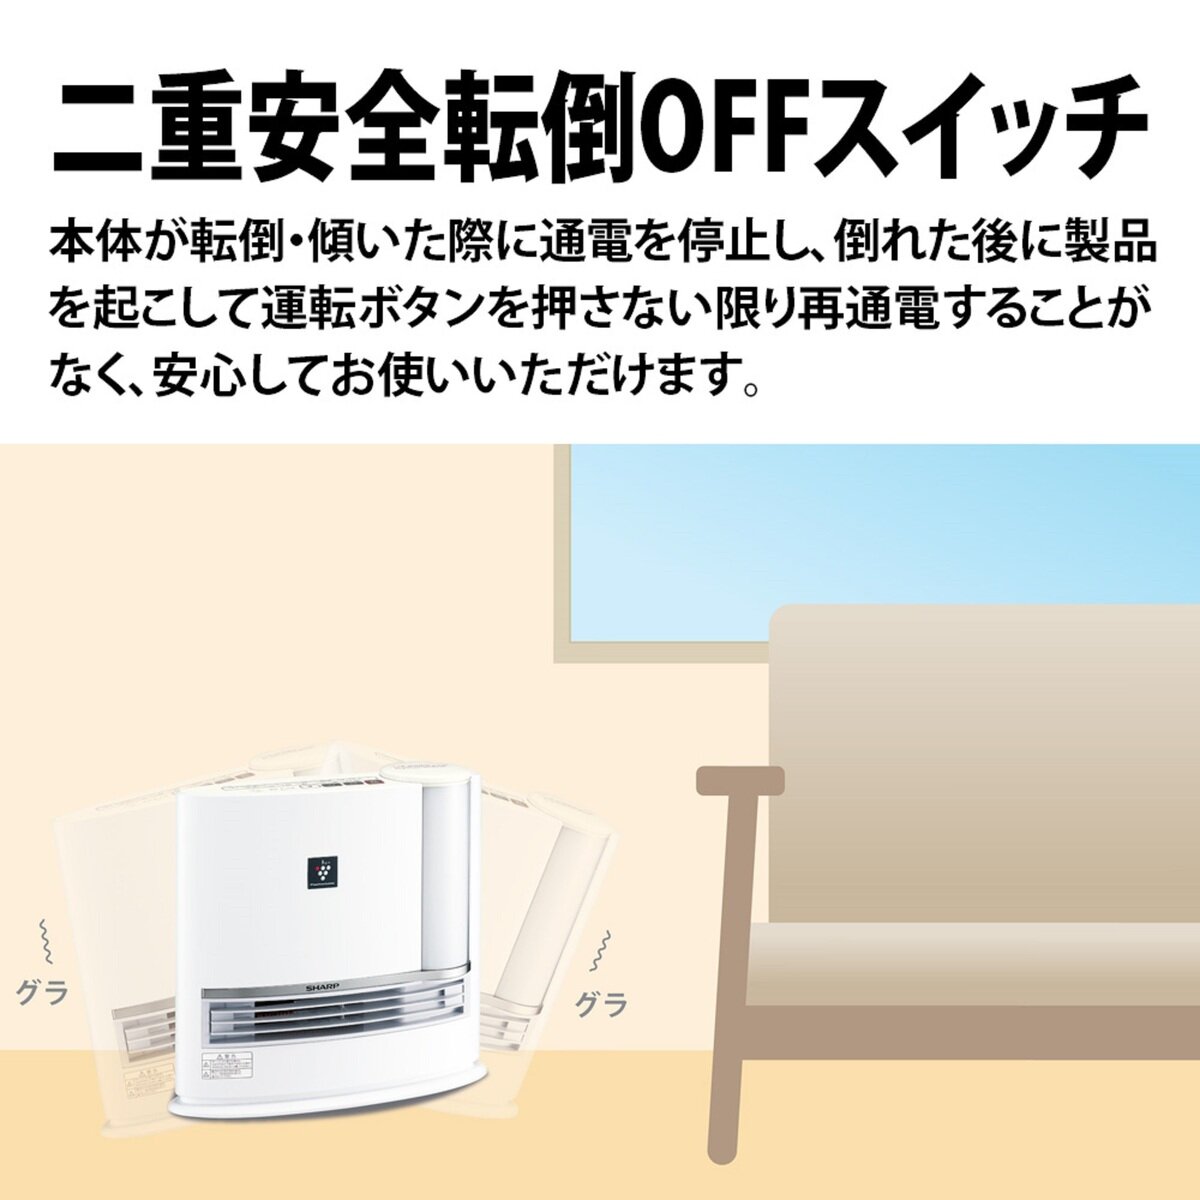 シャープ 加湿セラミックファンヒーター HX-J120-W | Costco Japan